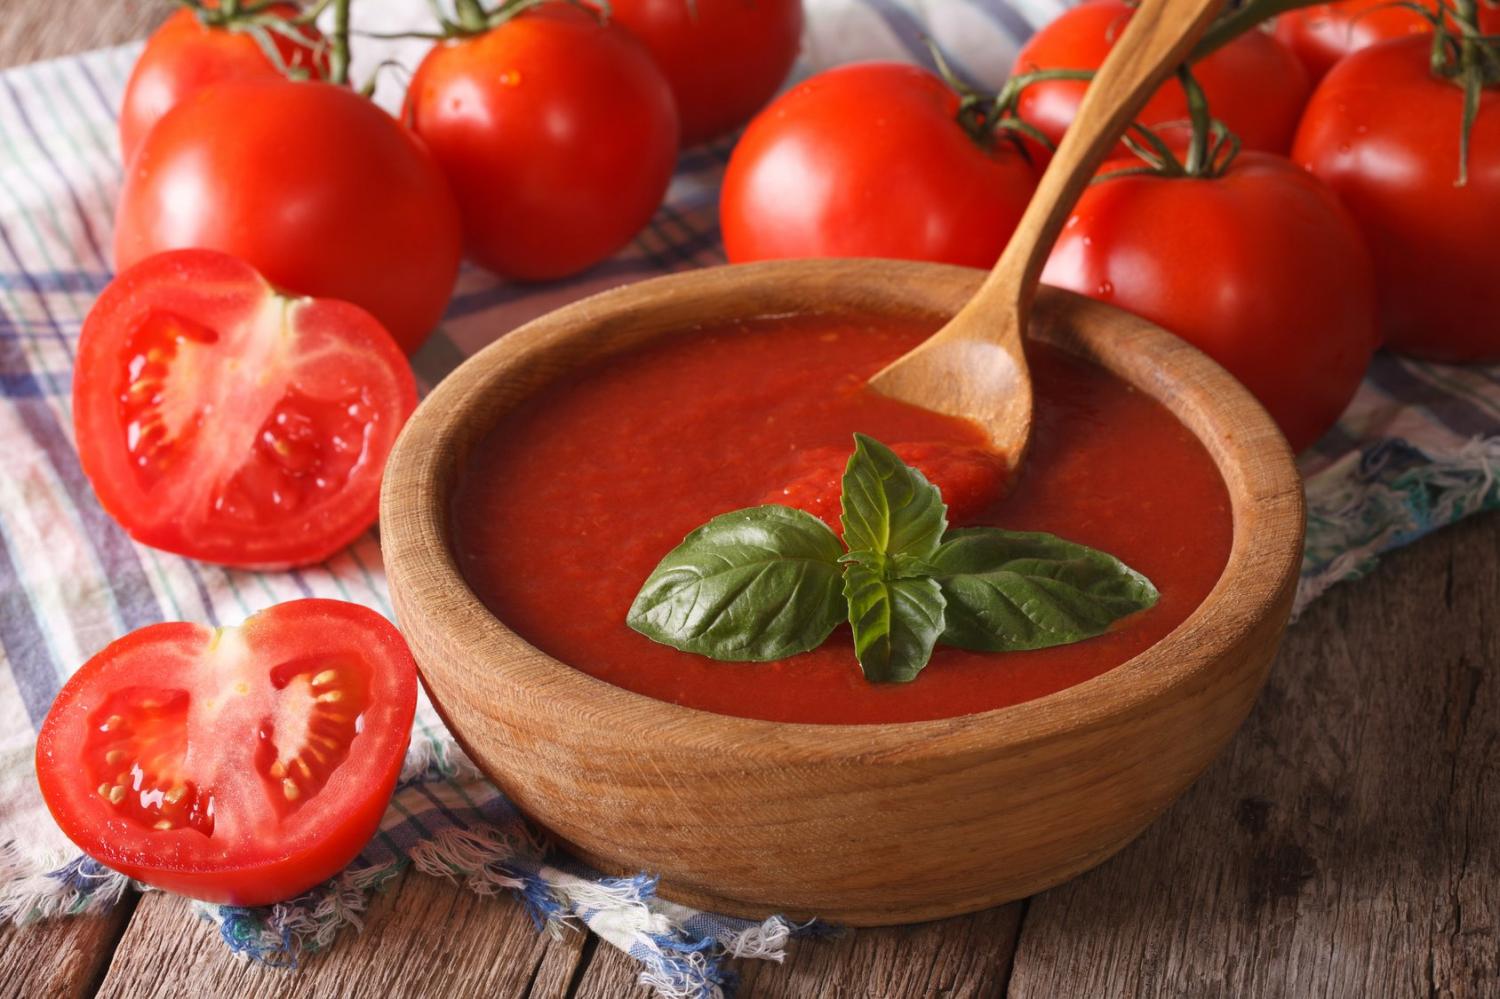 Состав, калорийность и описание томатного кетчупа с фото; польза и вред продукта; как правильно выбрать; рецепты, как приготовить в домашних условиях